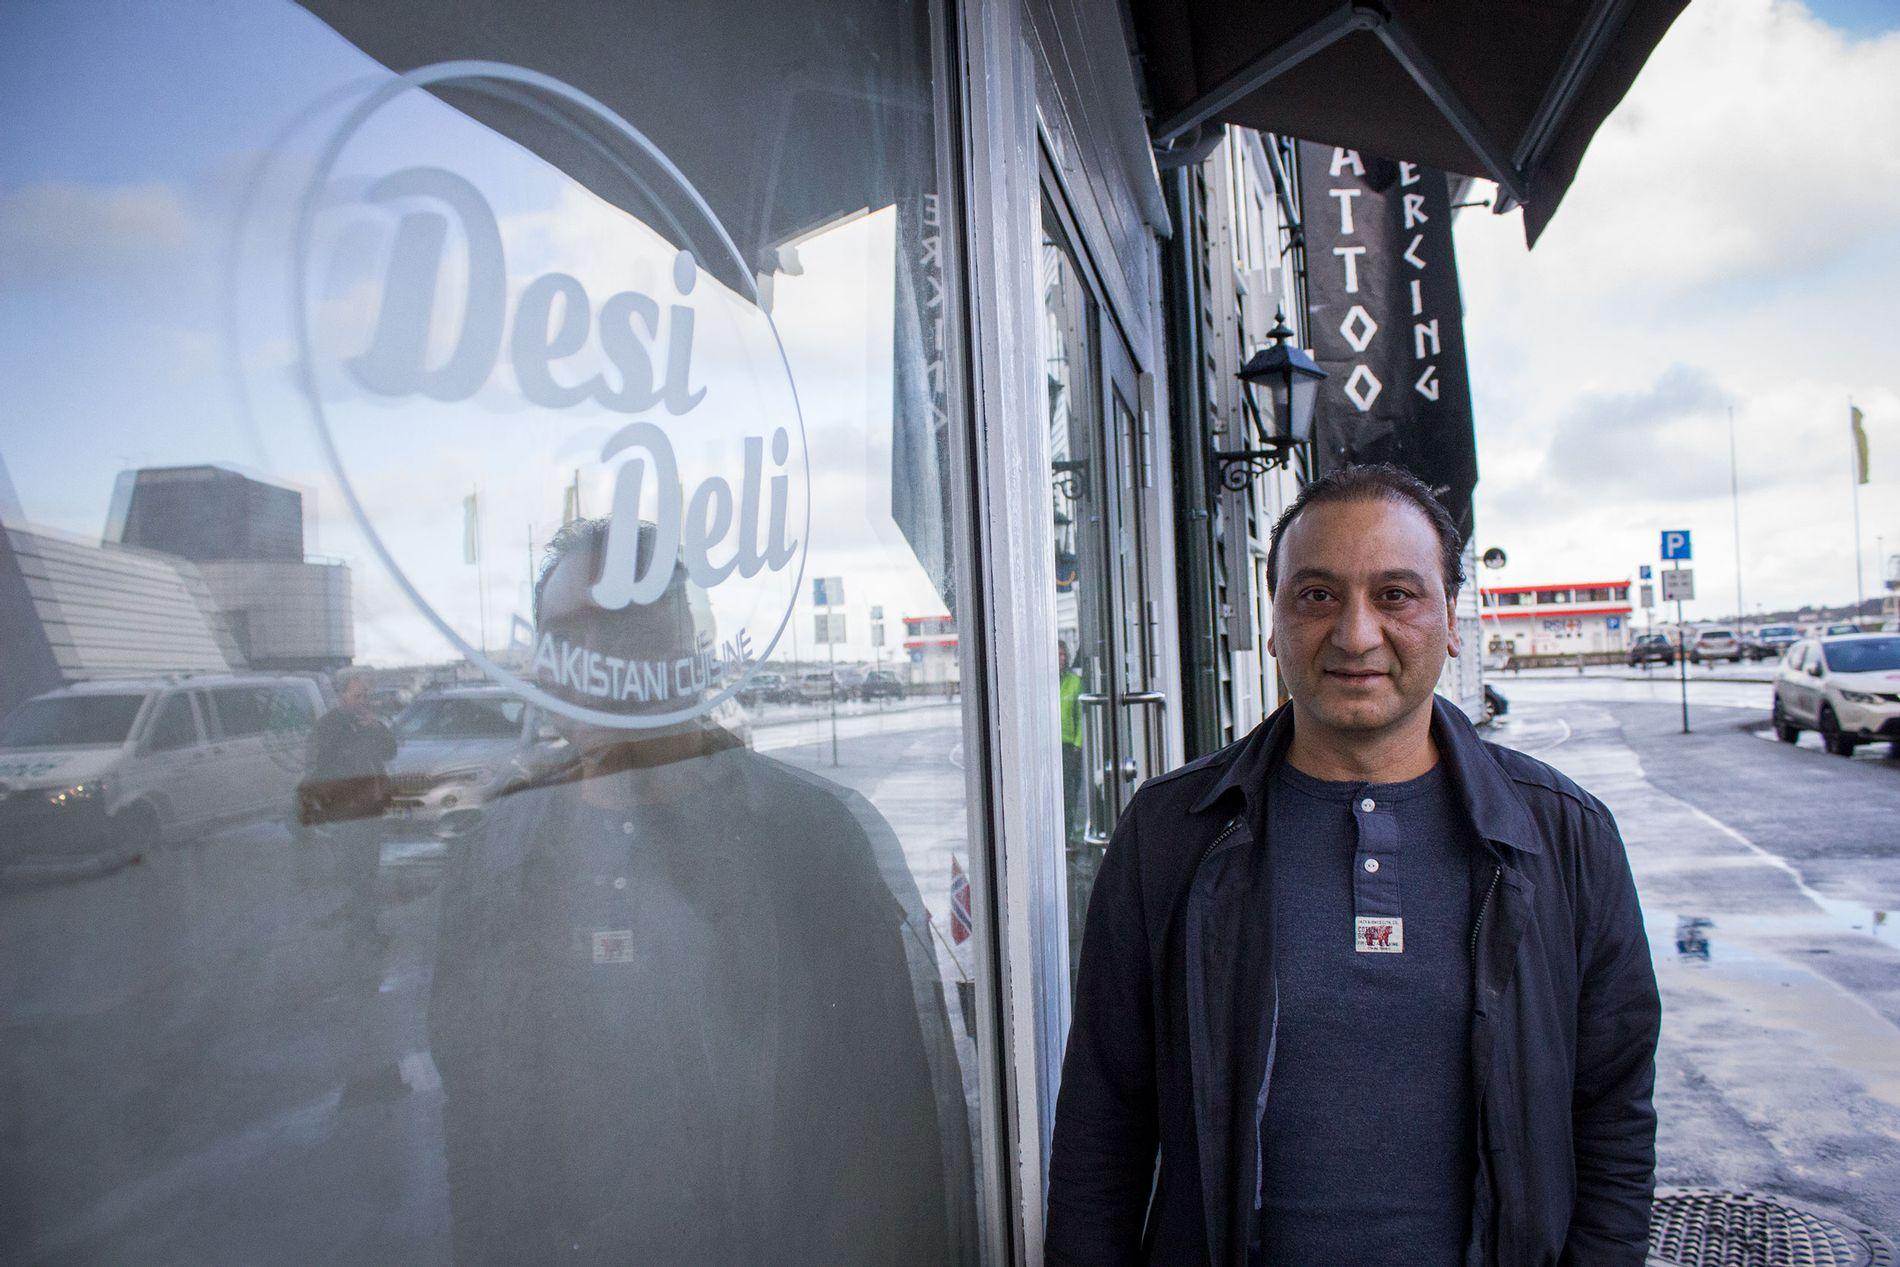 Imtanan Malik driver Desi Deli på Østervågkaien i Stavanger. Han forteller at restauranten er familievennlig, og de har derfor bevisst unnlatt å søke sjenkebevilling. Nå får det konsekvenser.